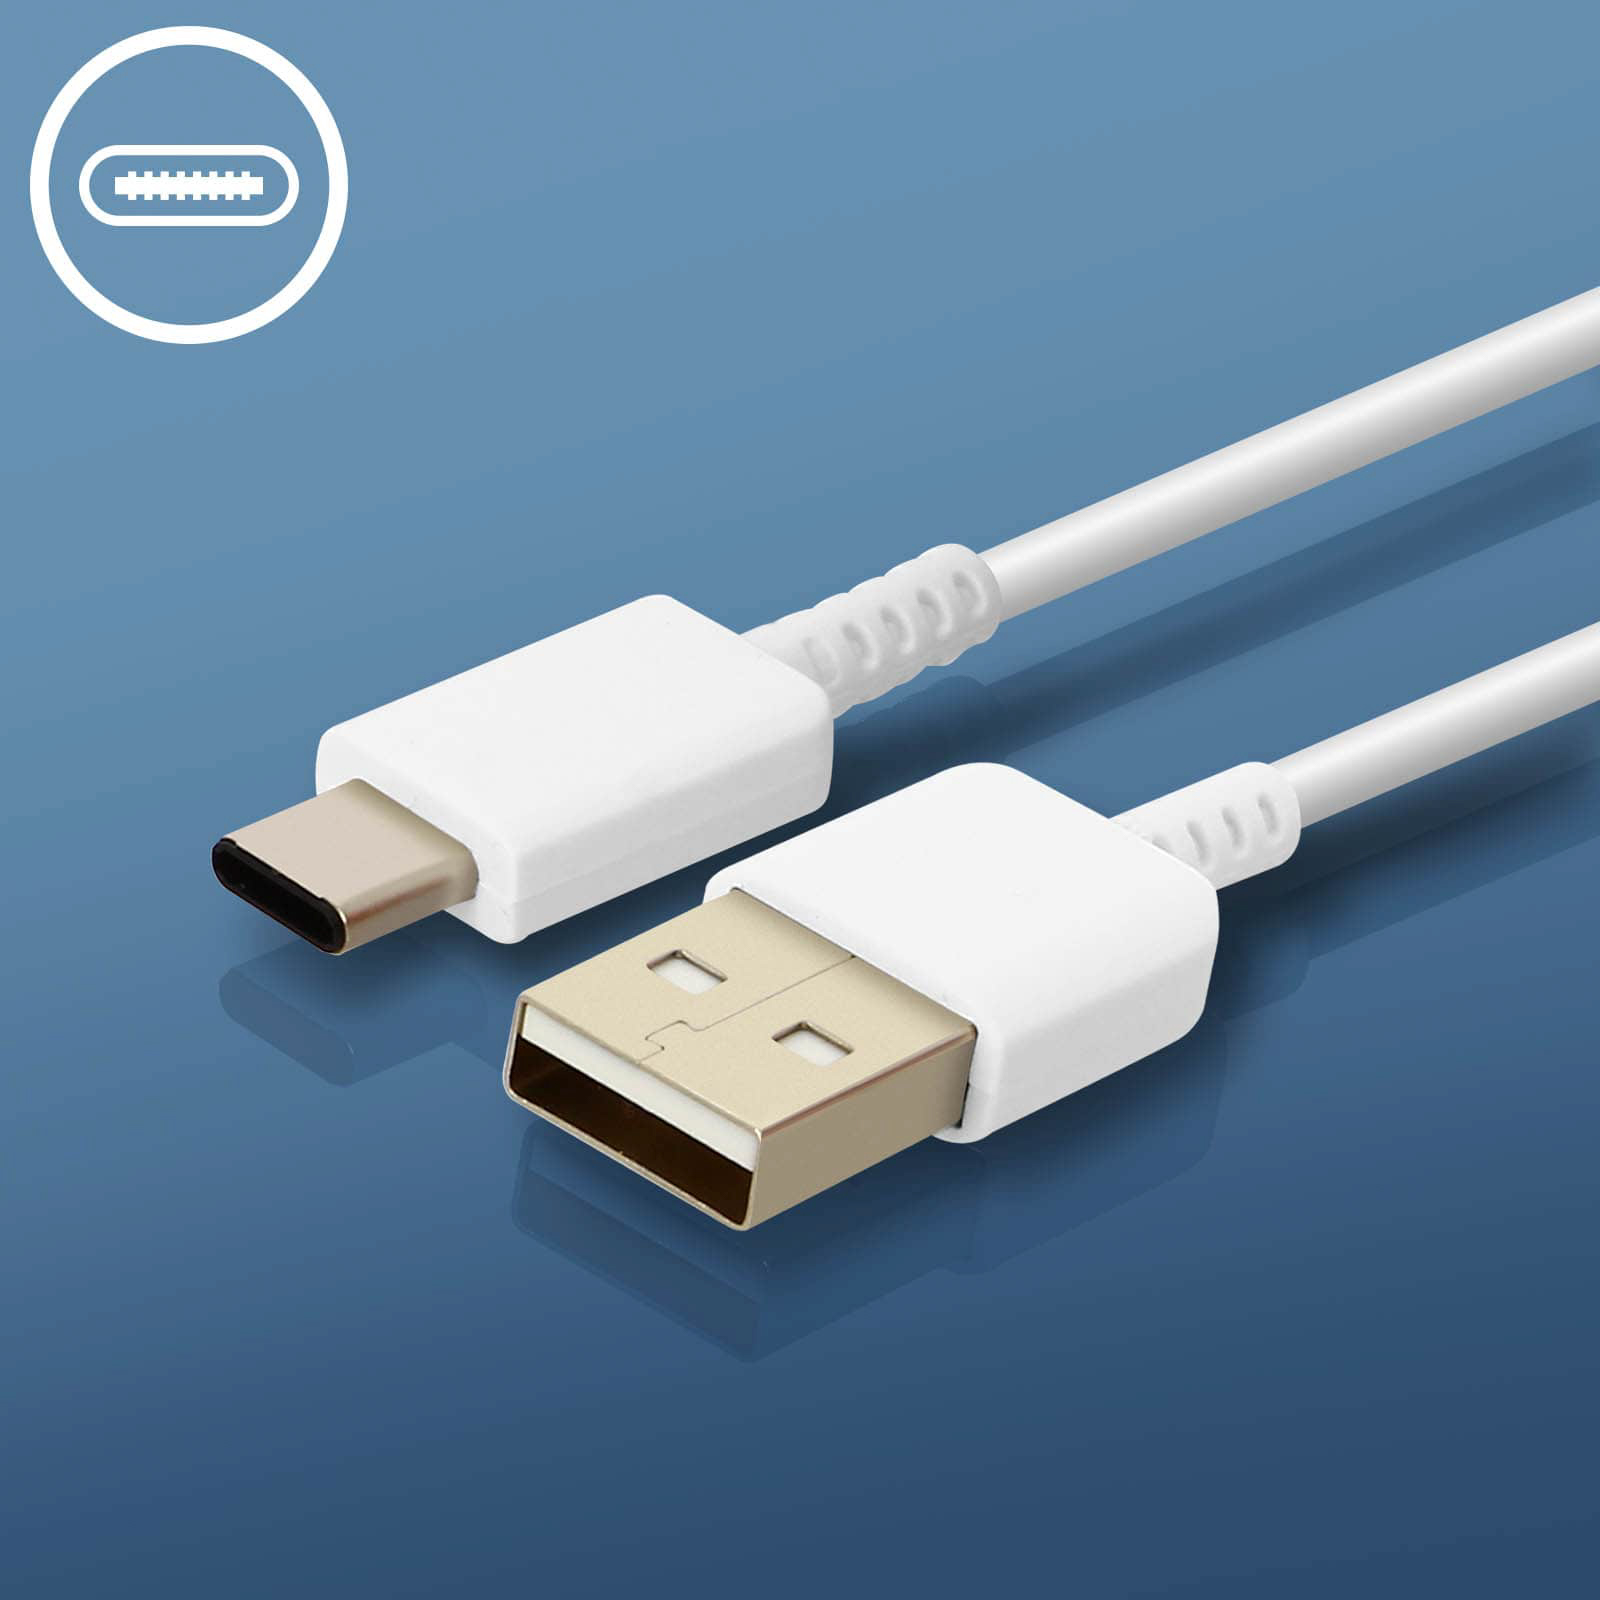 SAMSUNG Netzteil, 2A USB Wand-Ladegerät Netzteile Weiß Samsung